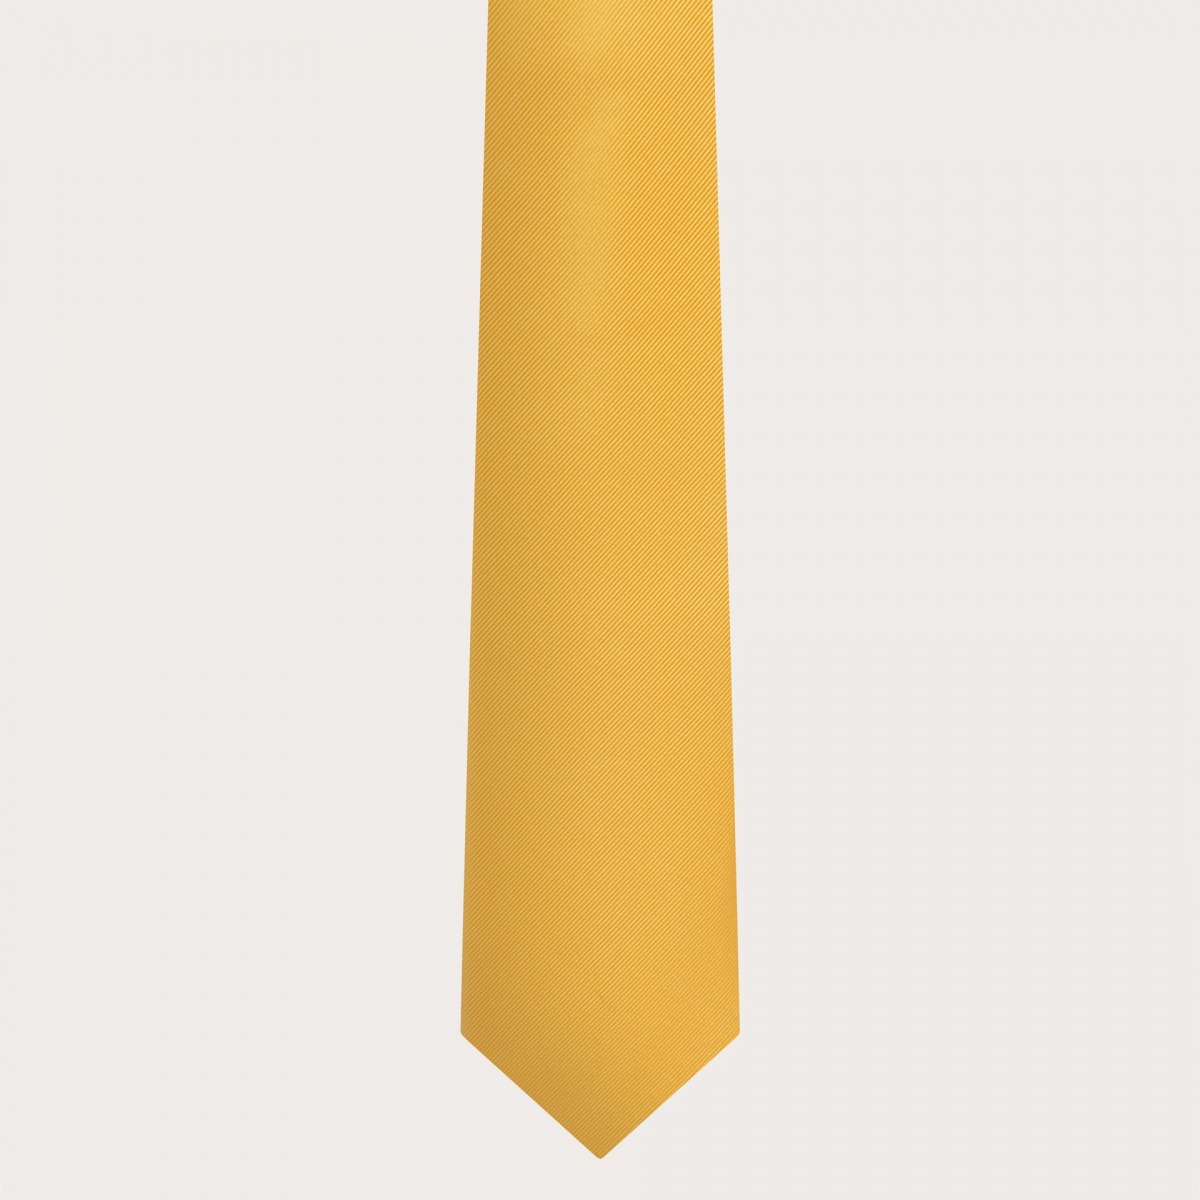 BRUCLE Cravate jaune en soie jacquard